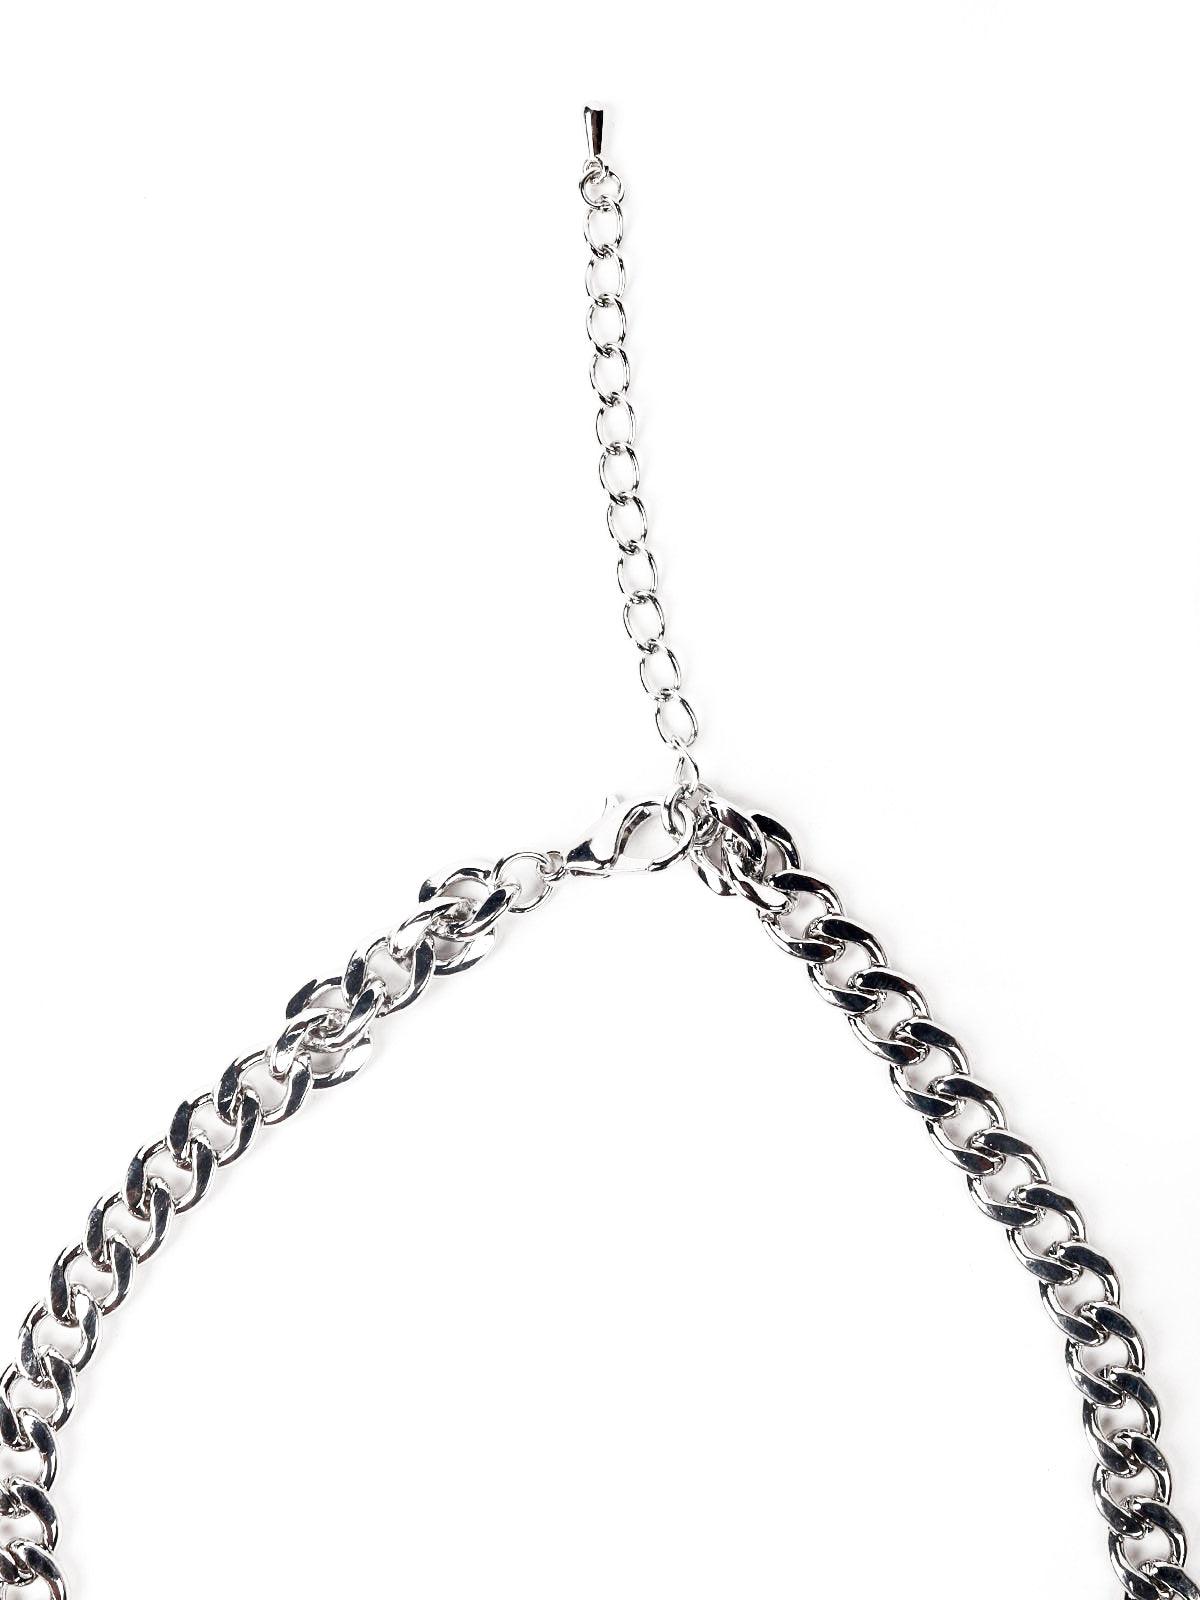 Women's Ruby Embellished Necklace - Odette